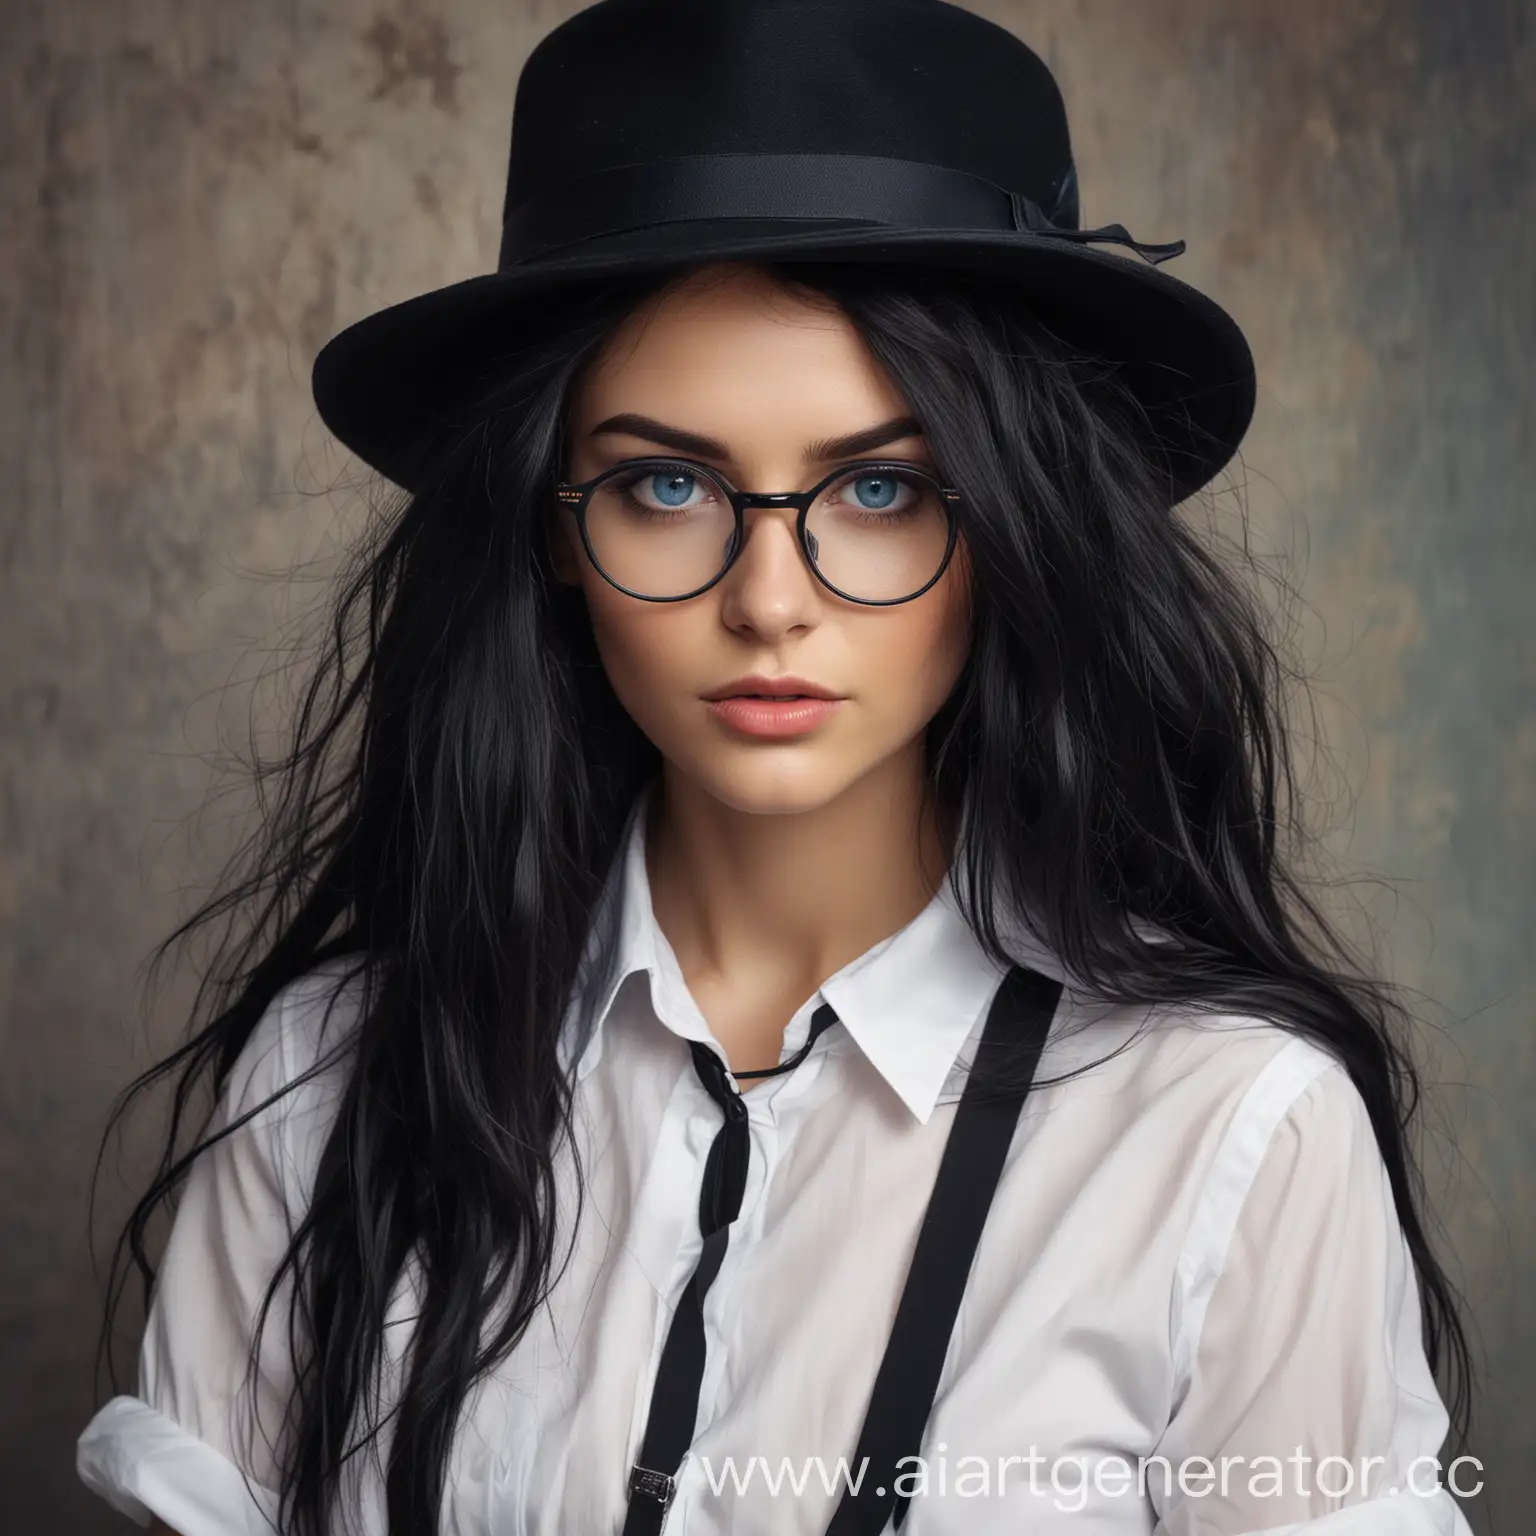 Женщина, с длинными, чёрными, растрёпанными волосами, голубыми глазами, в очках, в чёрной шляпе, в белой рубашке с чёрными подтяжками, с сигаретой